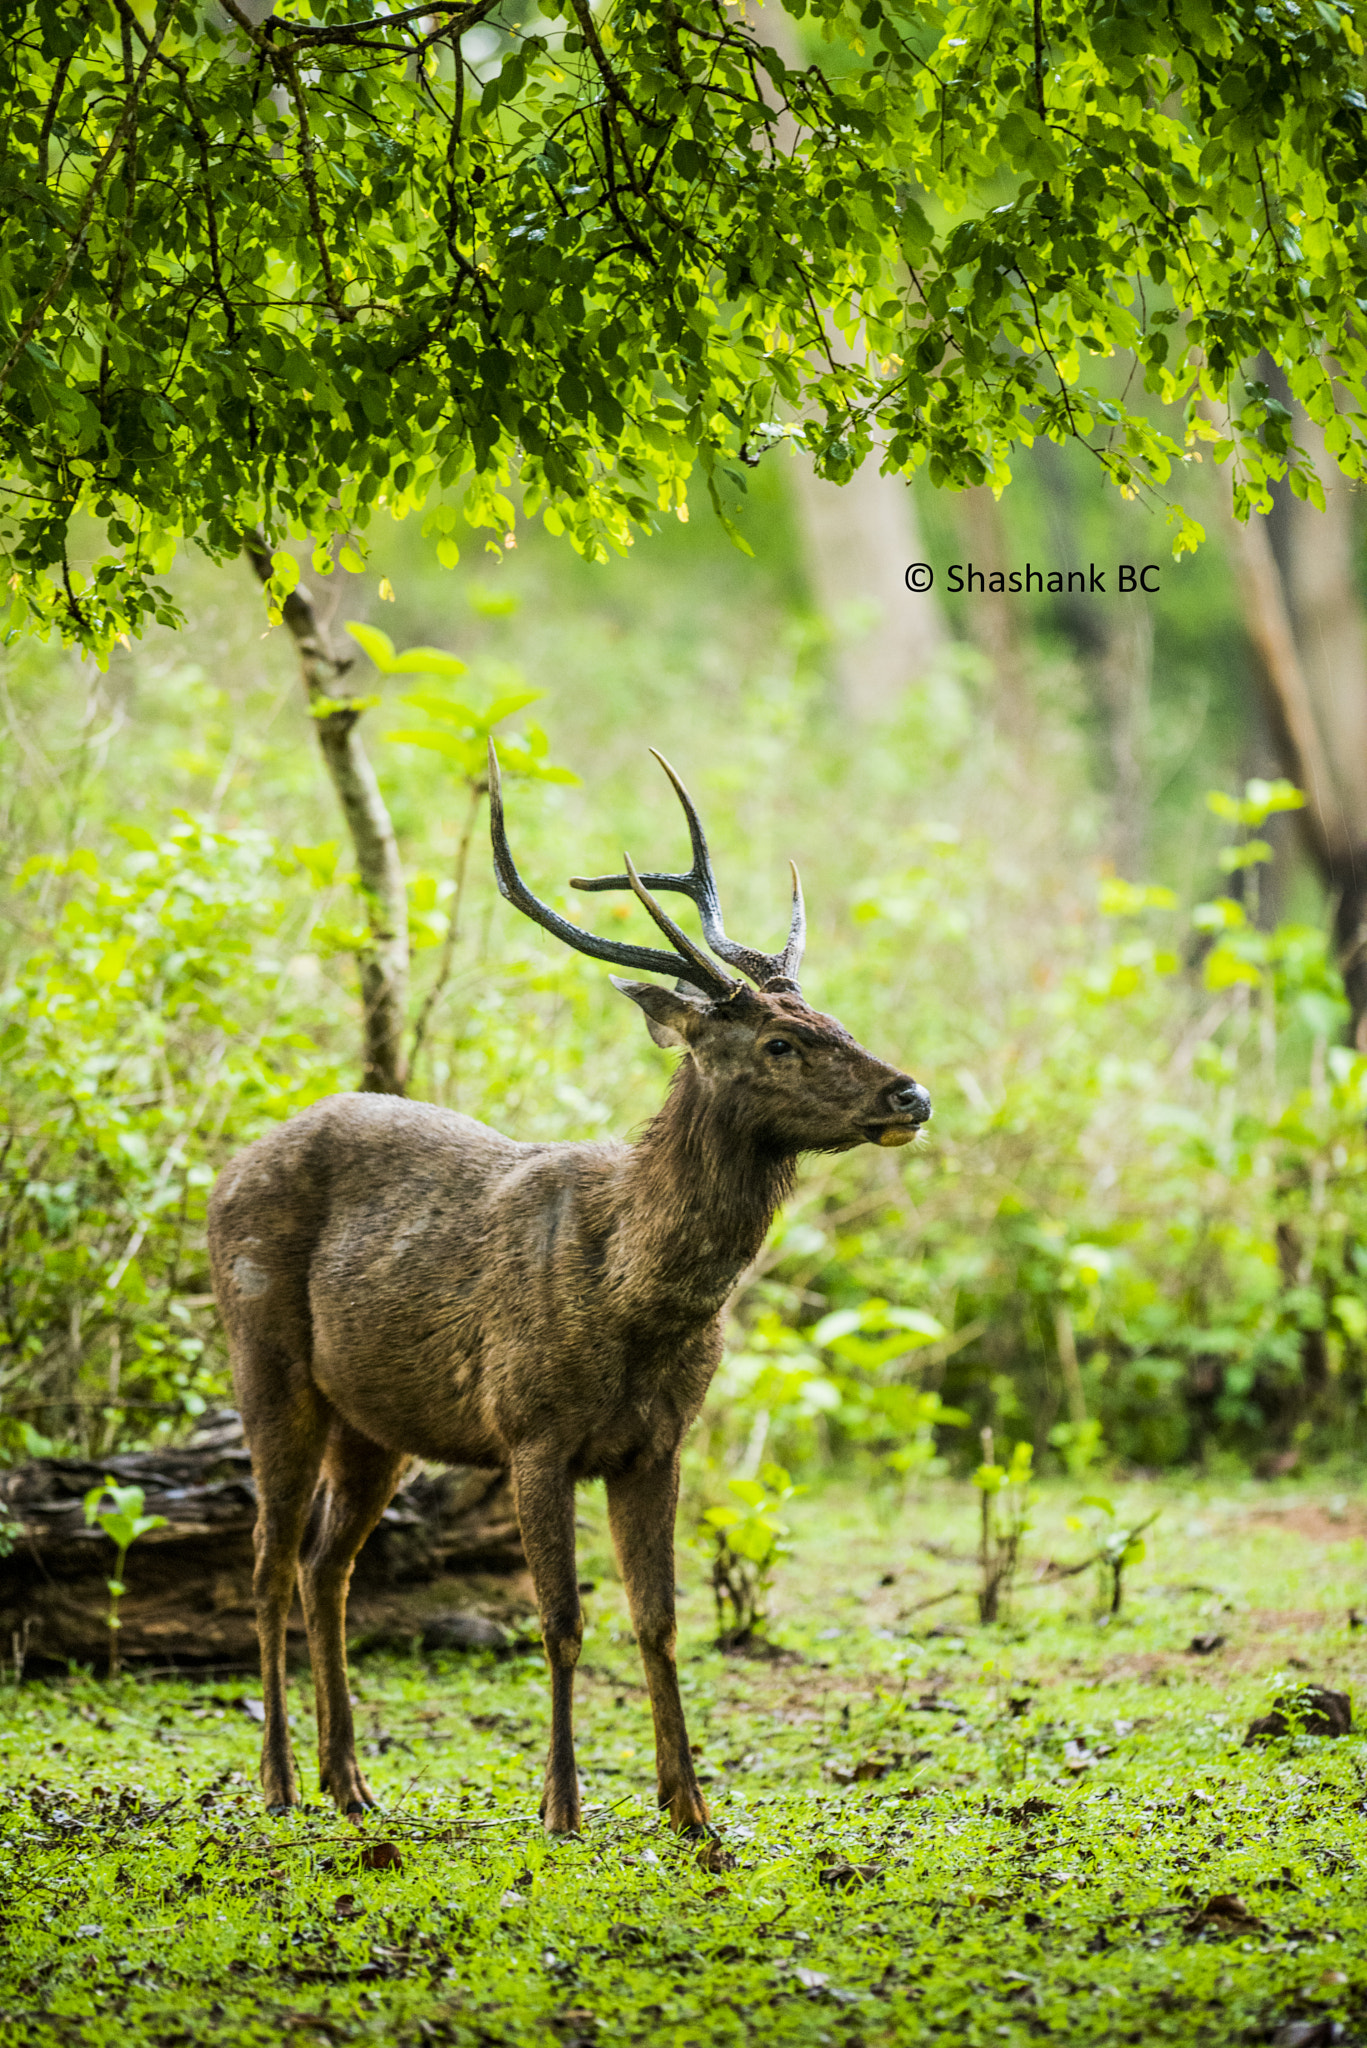 Nikon D810 sample photo. Sambar deer photography